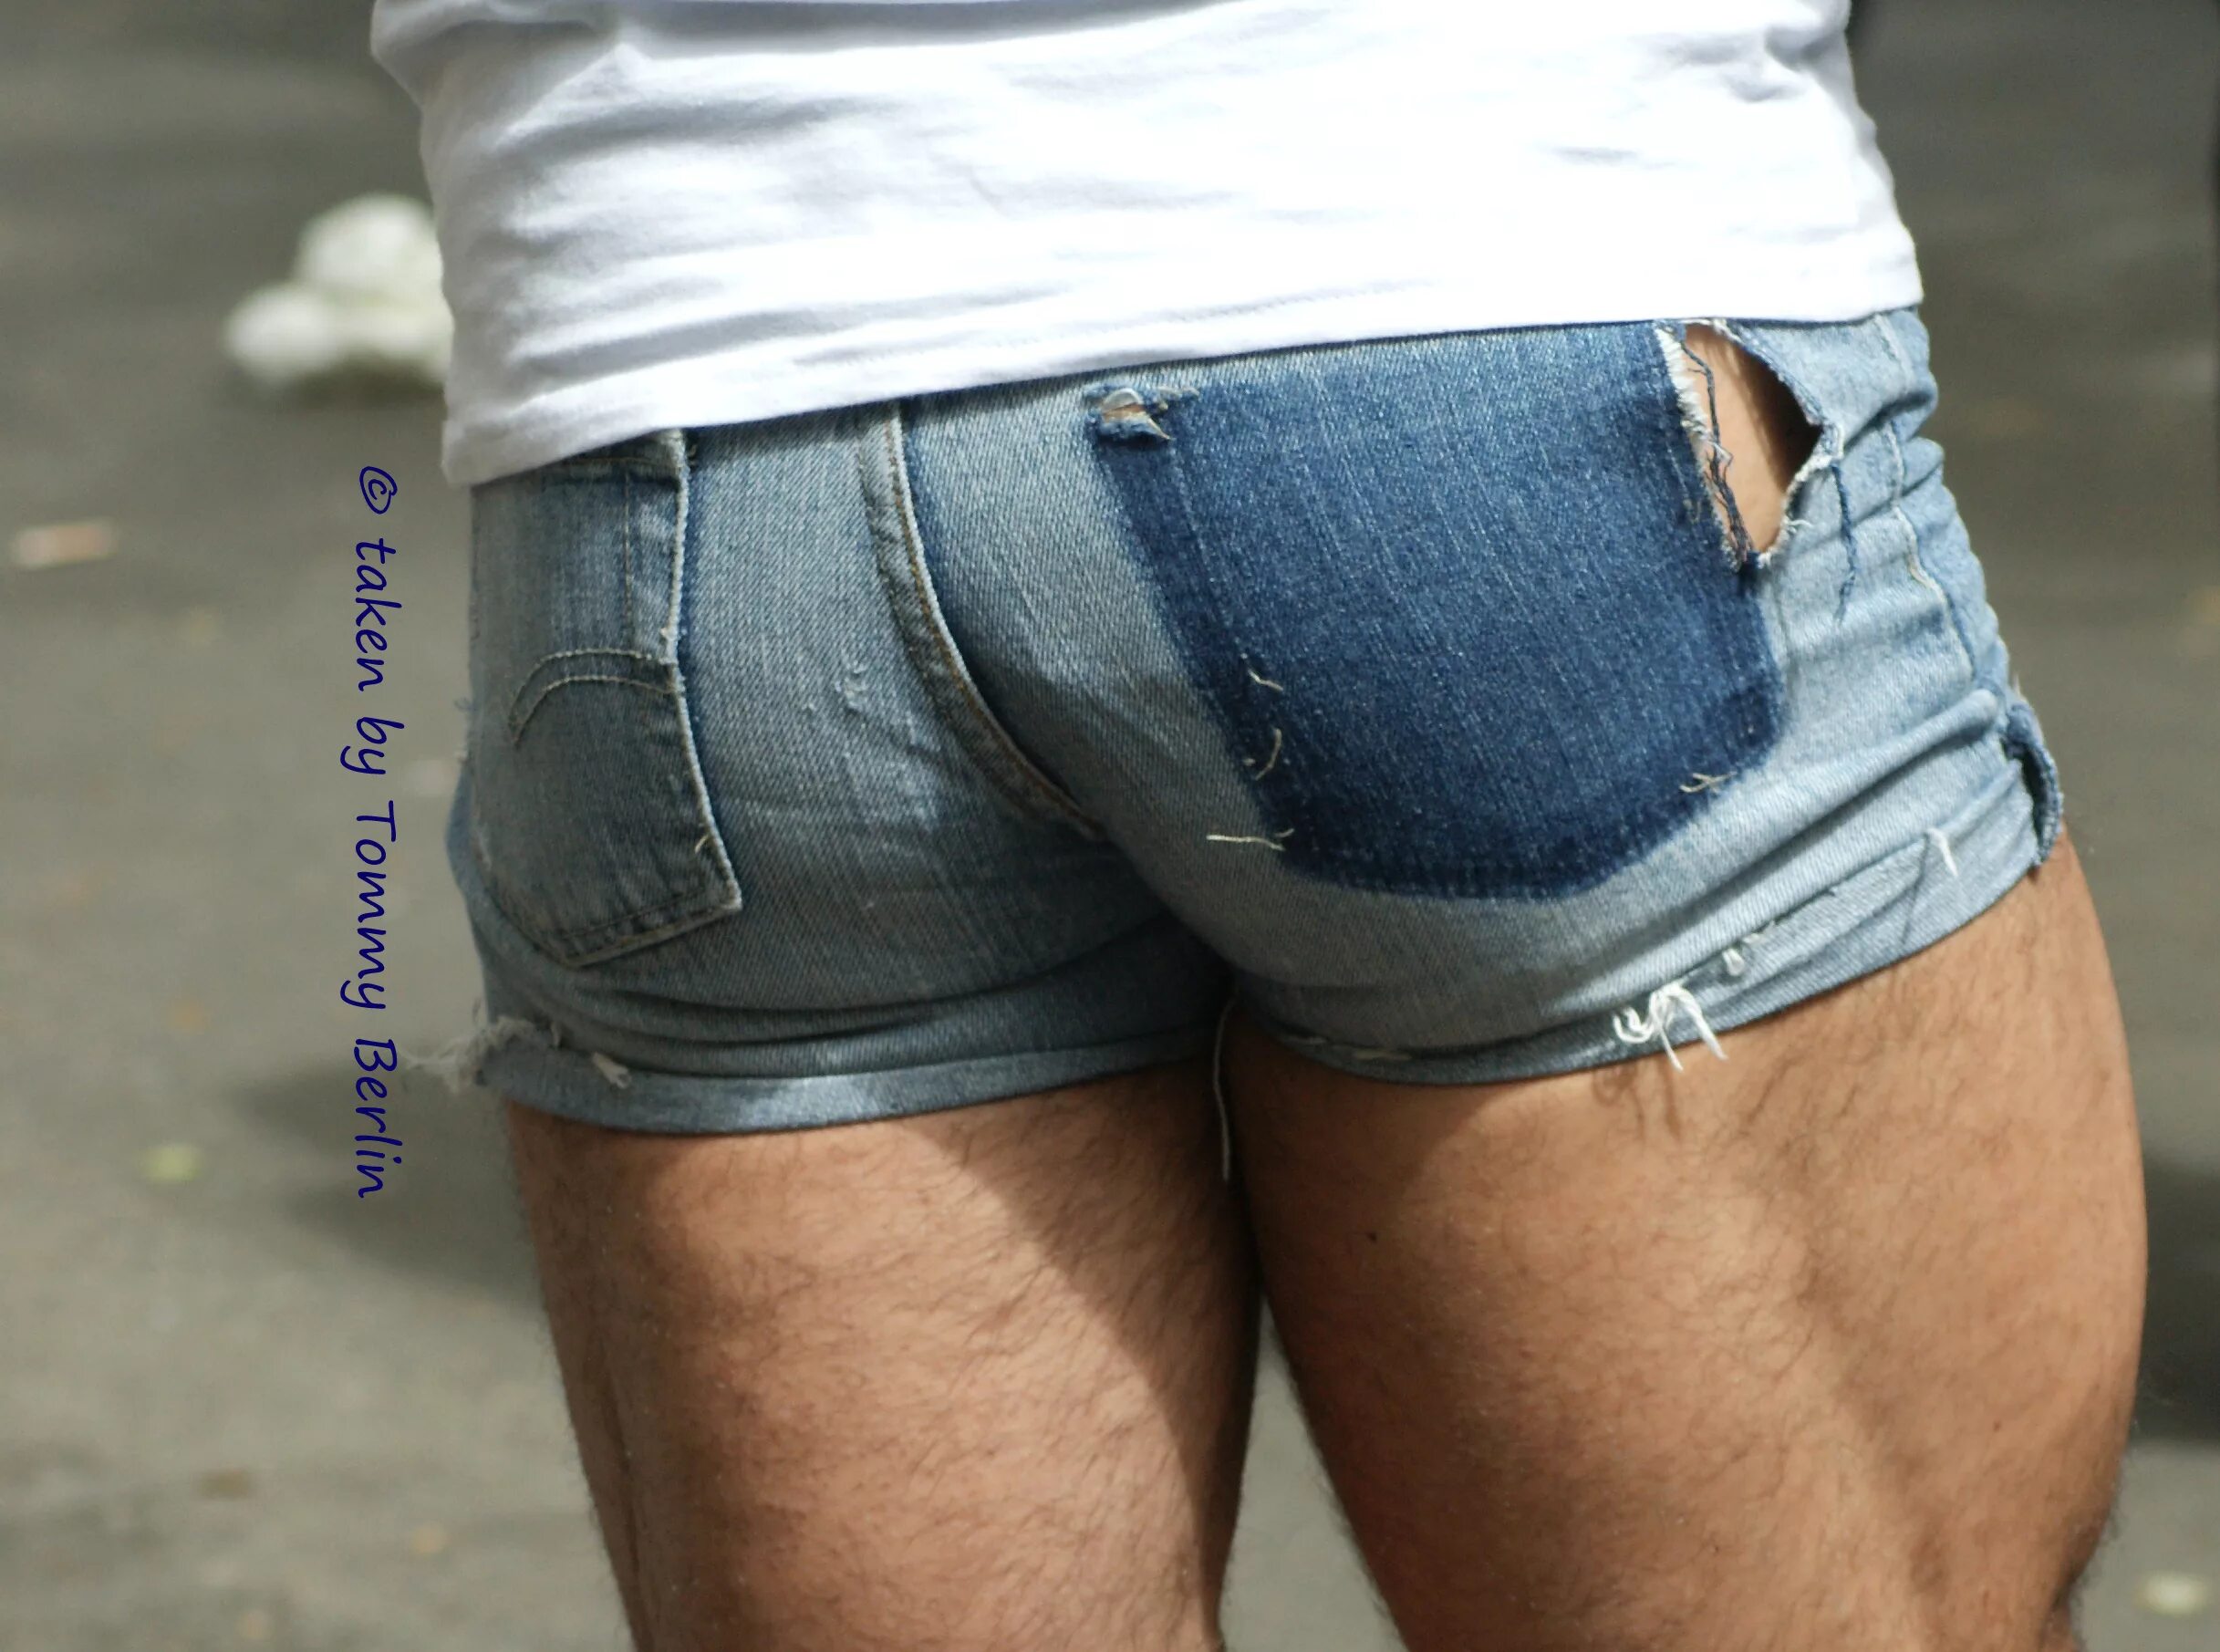 Очко в шортах. Мужик в джинсовых шортах. Мужчины в коротких джинсовых шортах. Мужской зад в джинсах. Мужской зад в рваных джинсах.